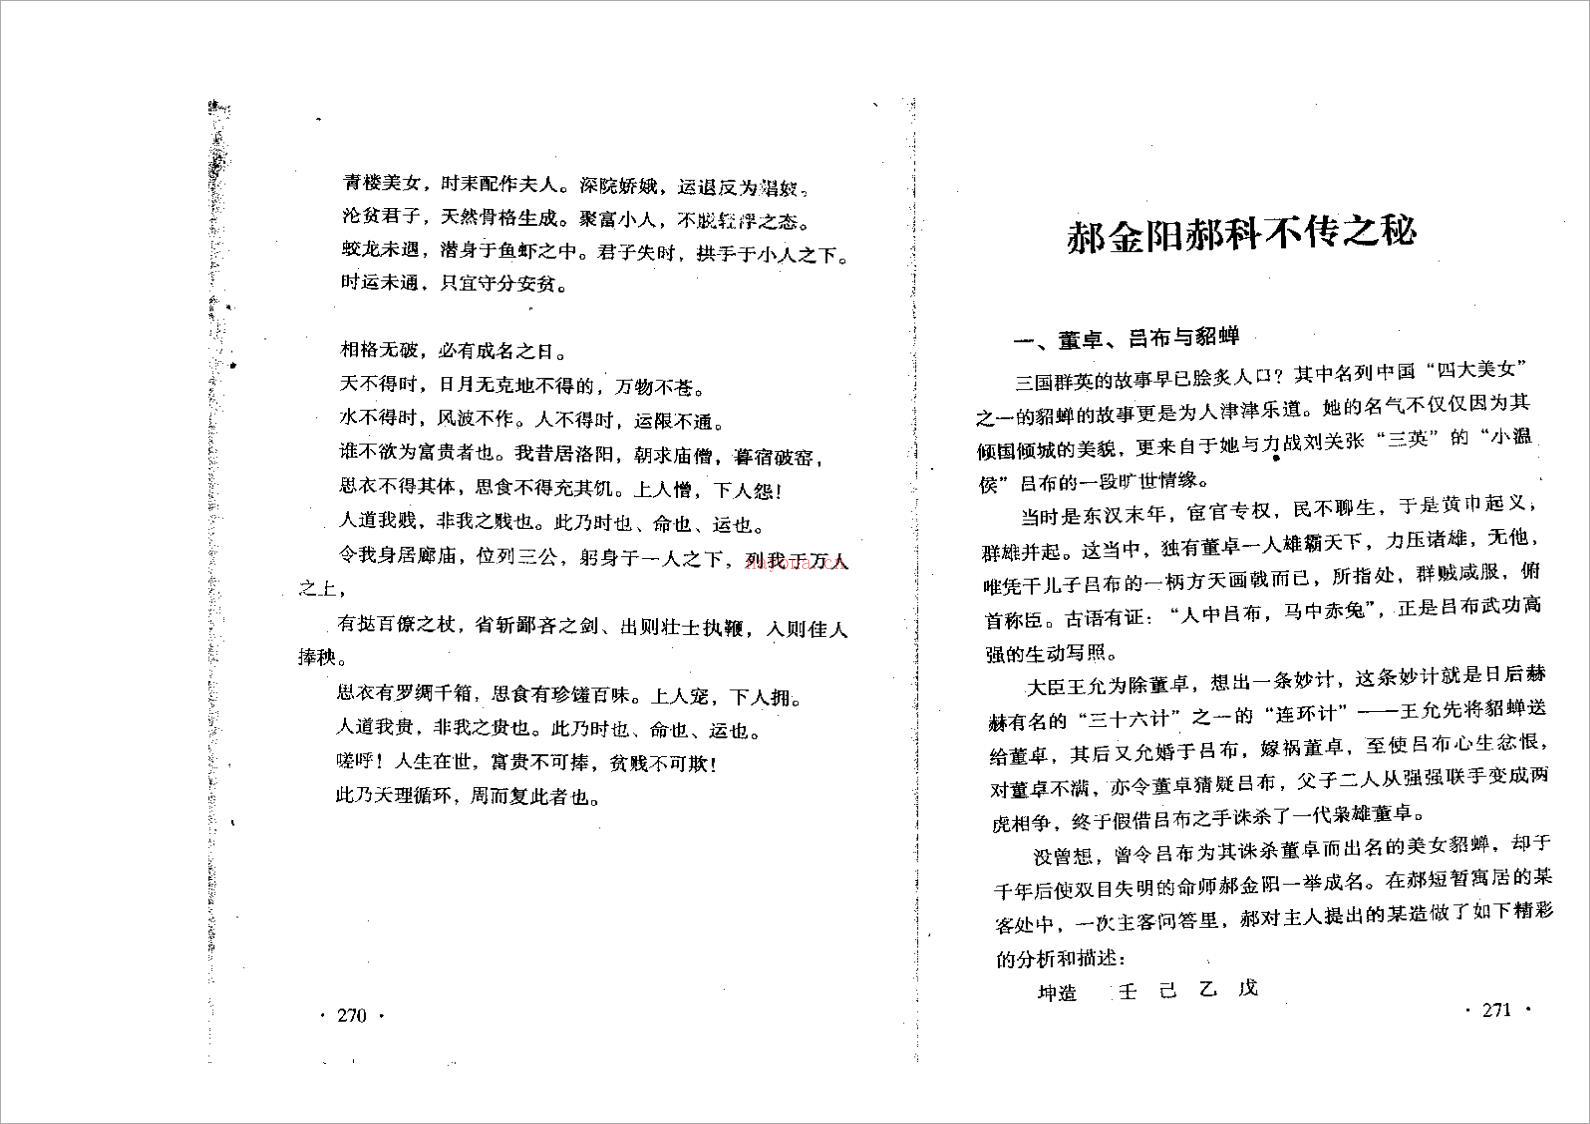 郝金阳-郝科盲派不传之秘（23页）.pdf 百度网盘资源